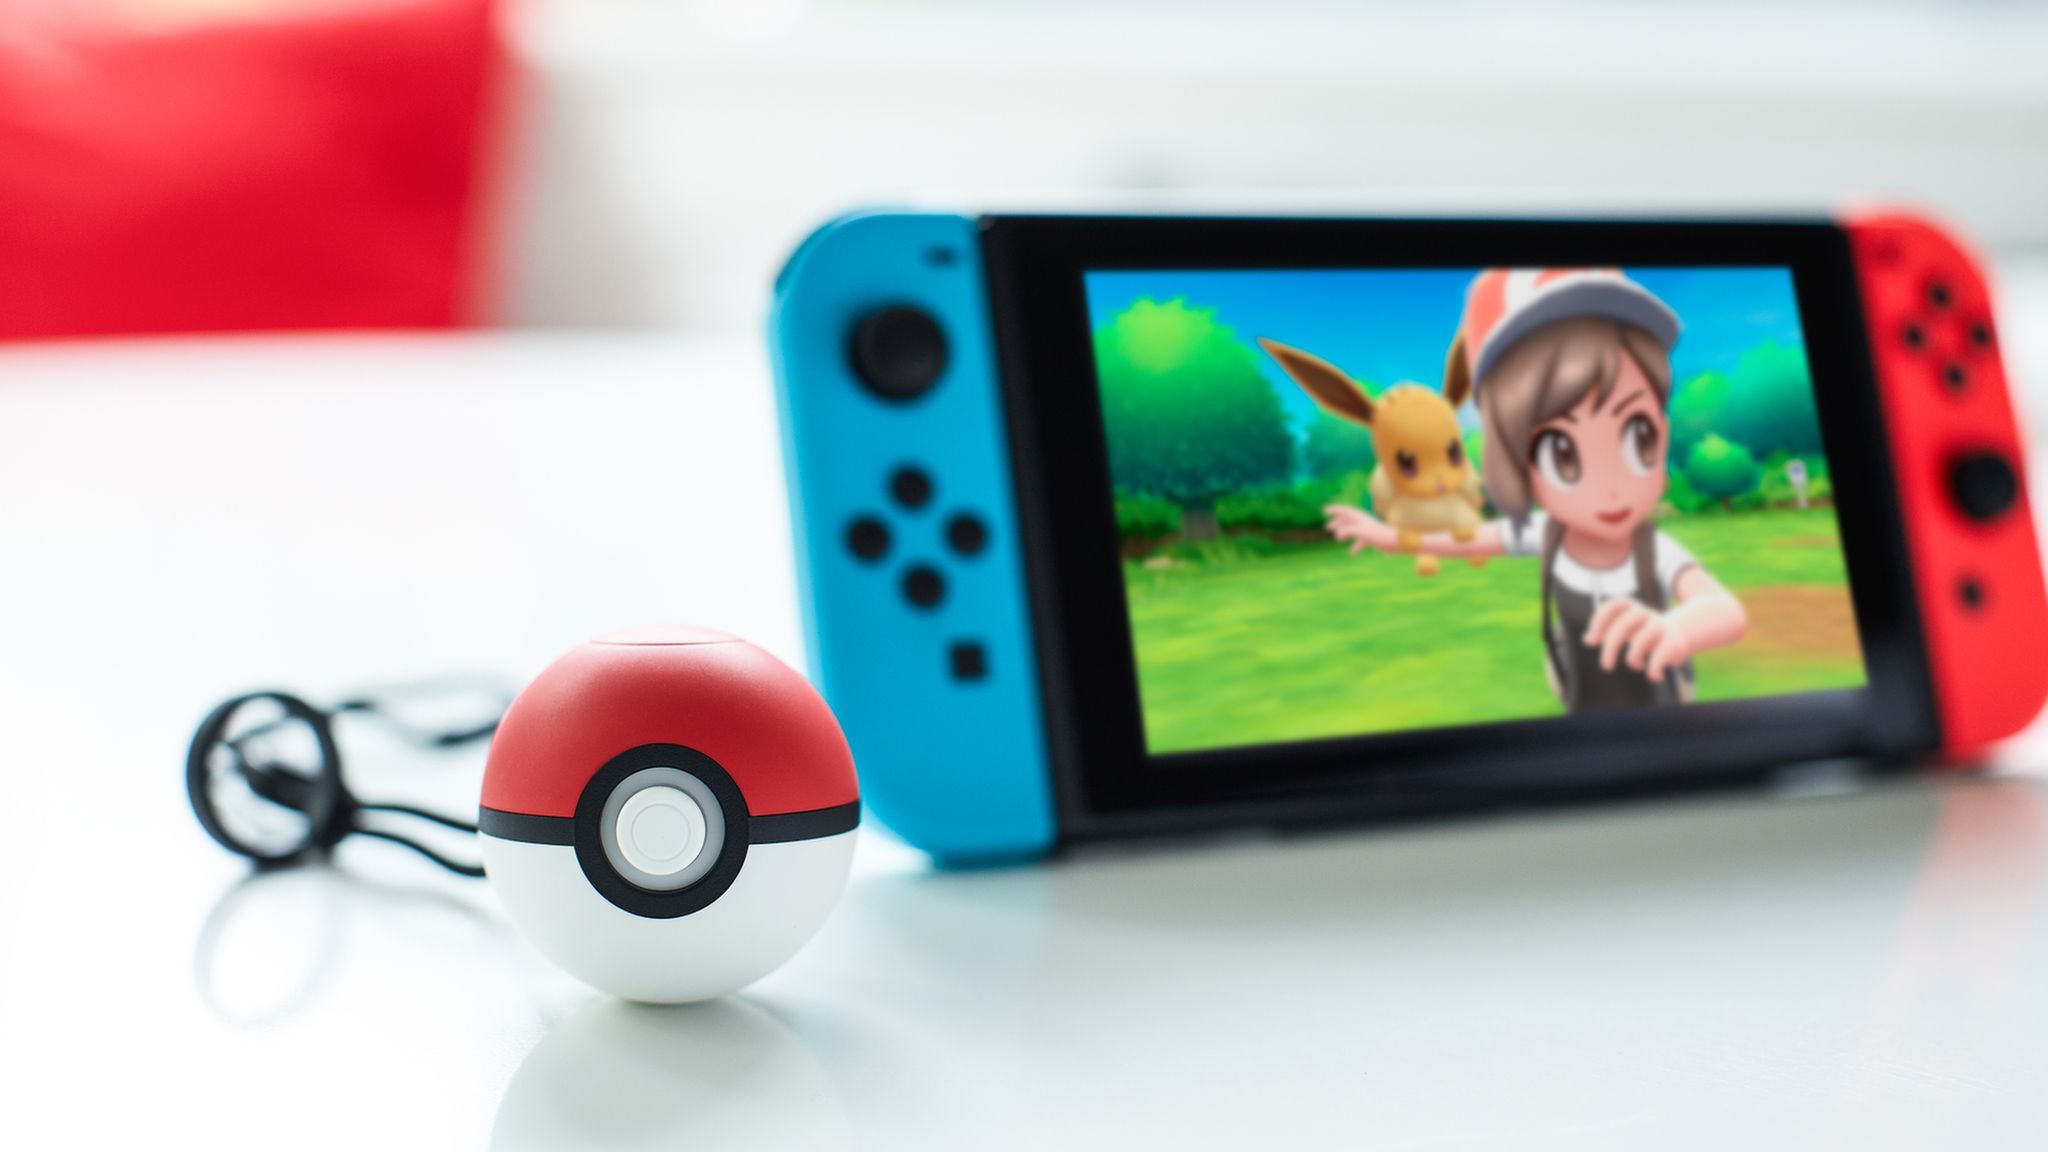 Pokémon Nintendo Switch Games